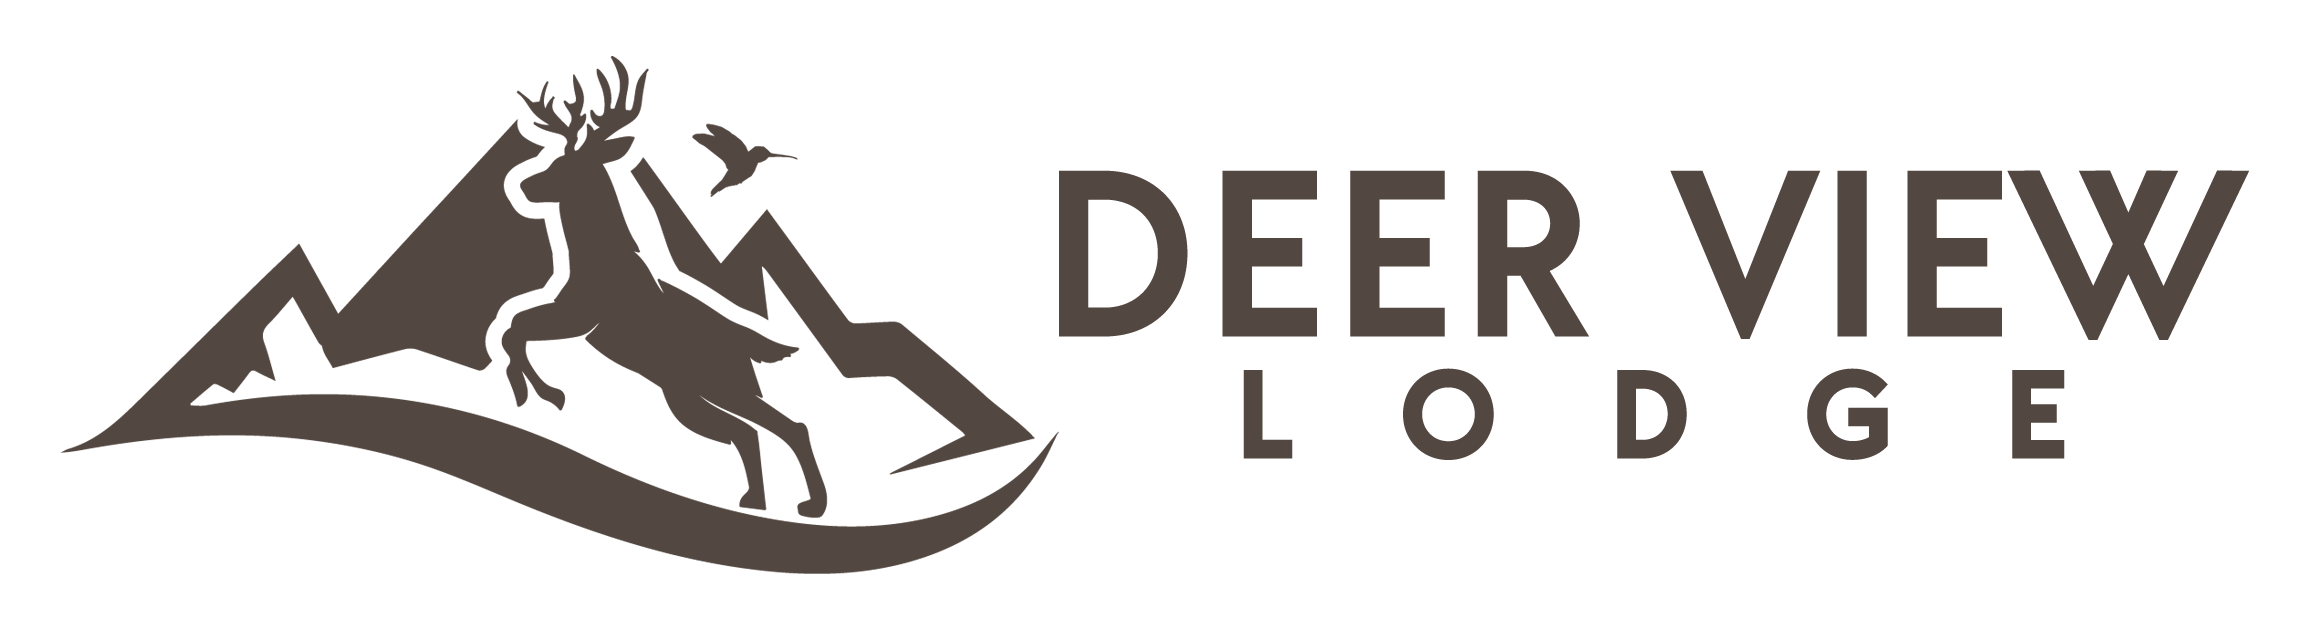 Deer View Lodge